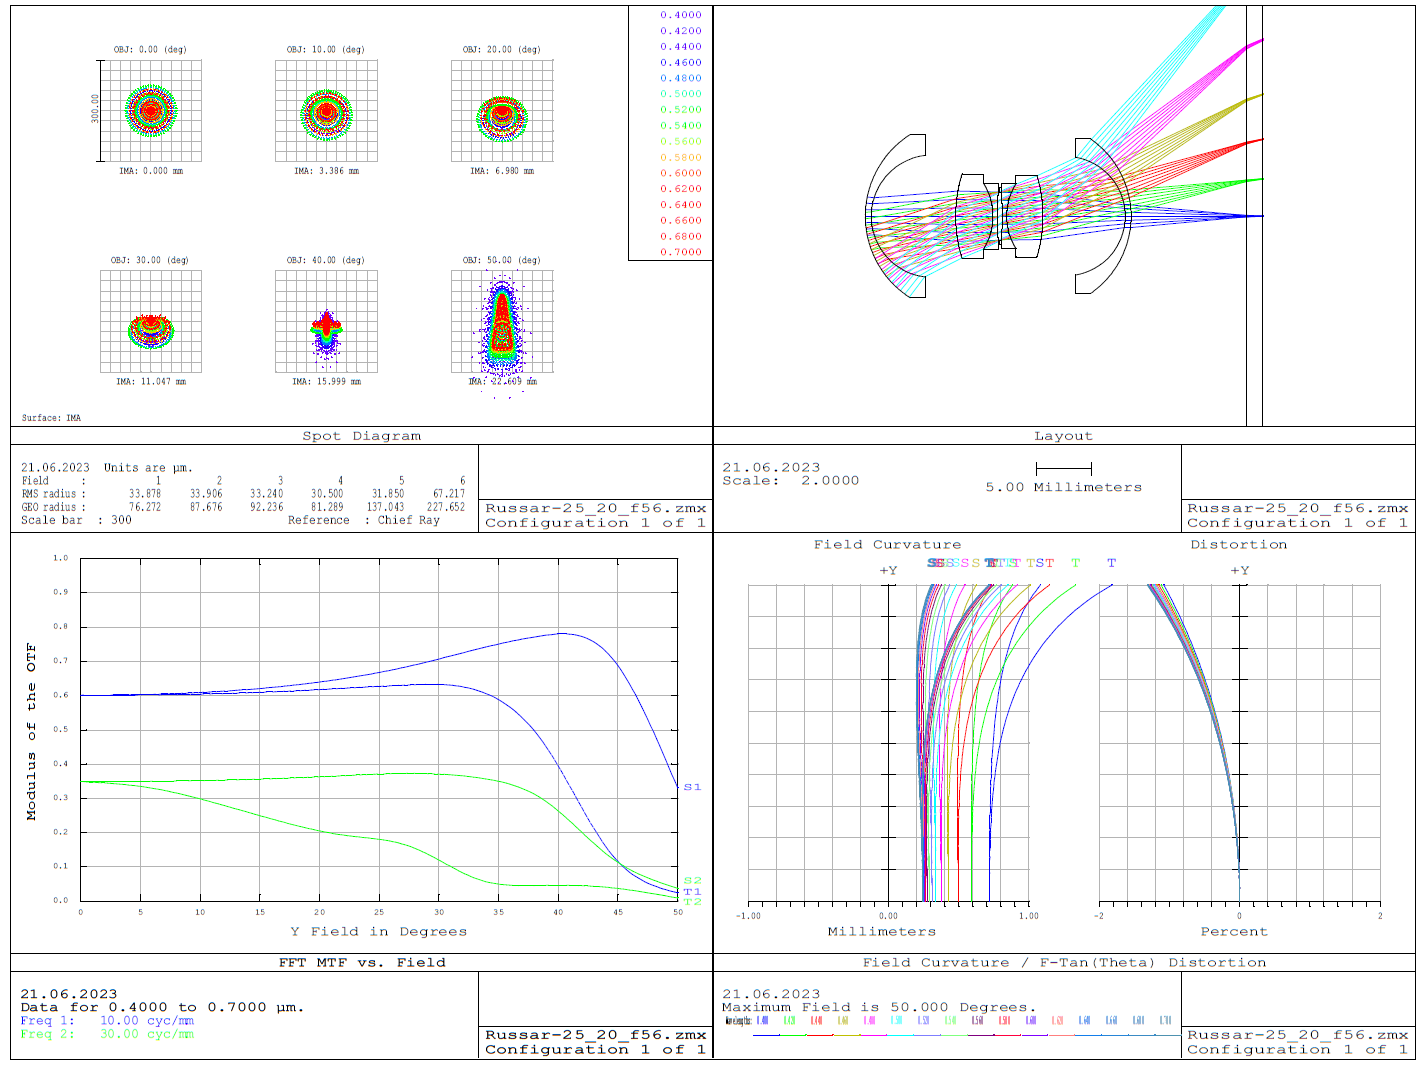  Диаграмма аберрационных пятен, принципиальная схема, частотно-контрастная характеристика (для спектральной функции Sony A7M2) и диаграмма кривизна поля-дисторсия для 20/5.6 объектива типа Руссар-25 при наличии матричного фильтра (К8, толщина 1.5 мм).